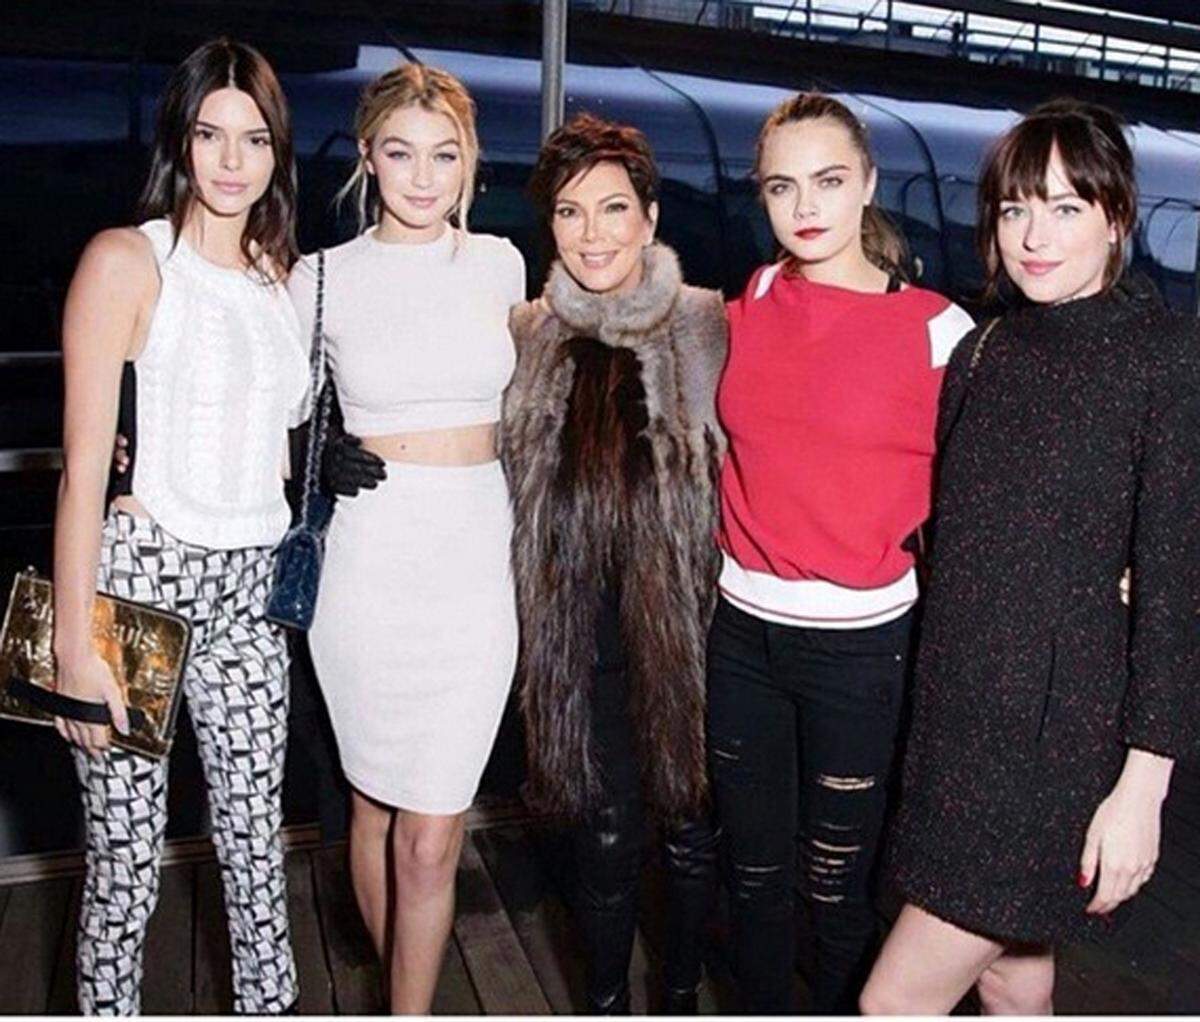 Unter der illustren Gästeschar befanden sich Topmodels, Musiker und Schauspieler, so etwa Model Kendall Jenner und Kollegin Gigi Hadid, Kris Jenner, Cara Delevingne und Dakota Johnson.